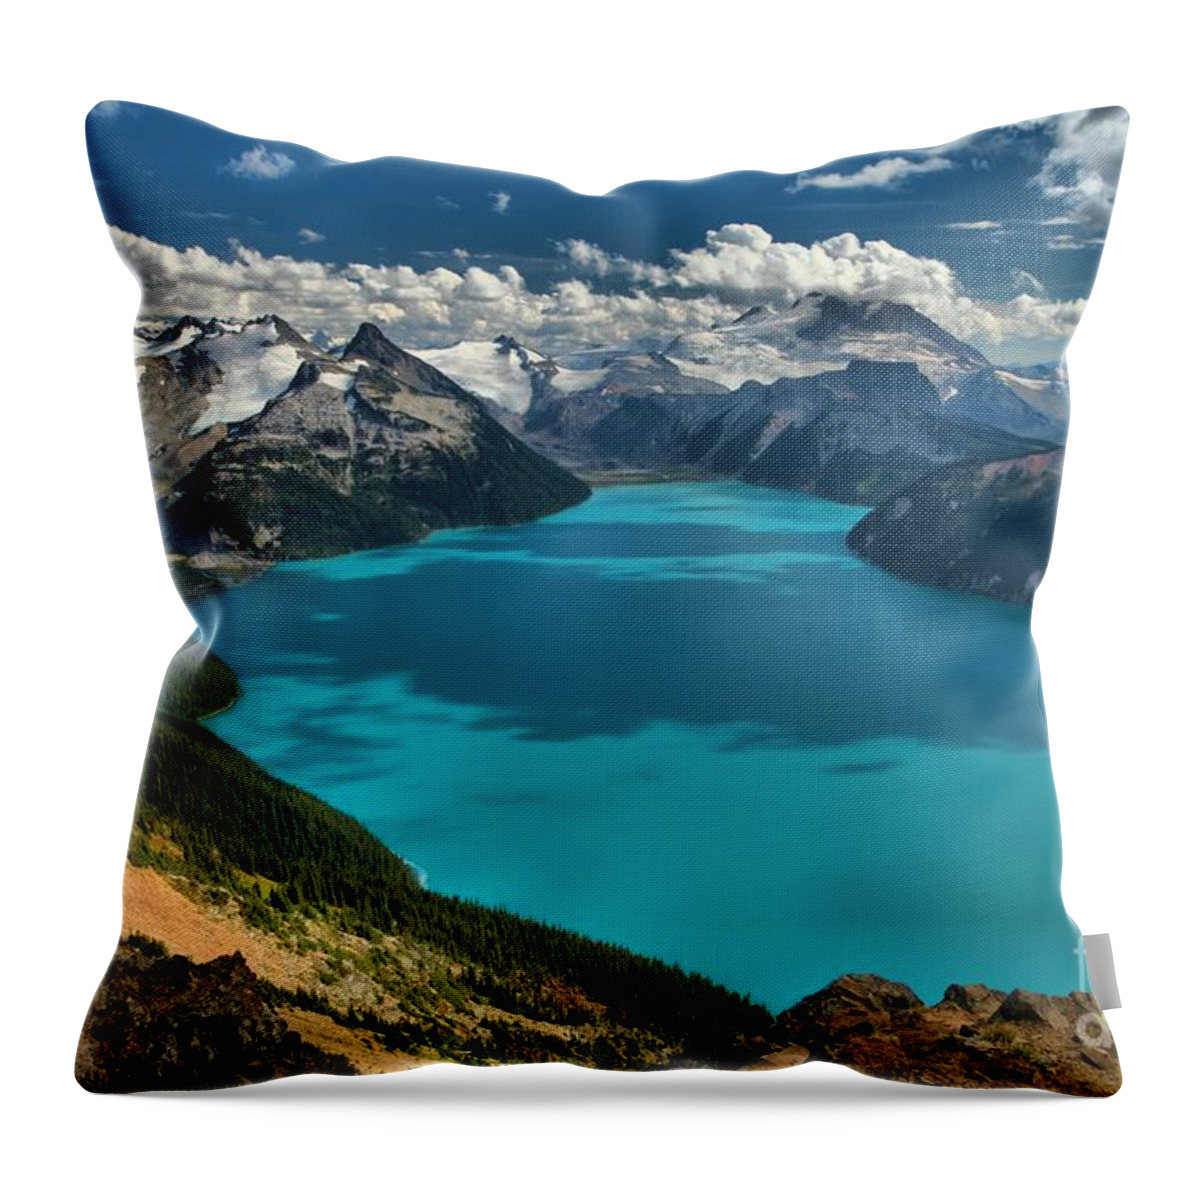 Garibaldi Throw Pillow featuring the photograph Garibaldi Panorama Ridge Squamish British Columbia by Adam Jewell